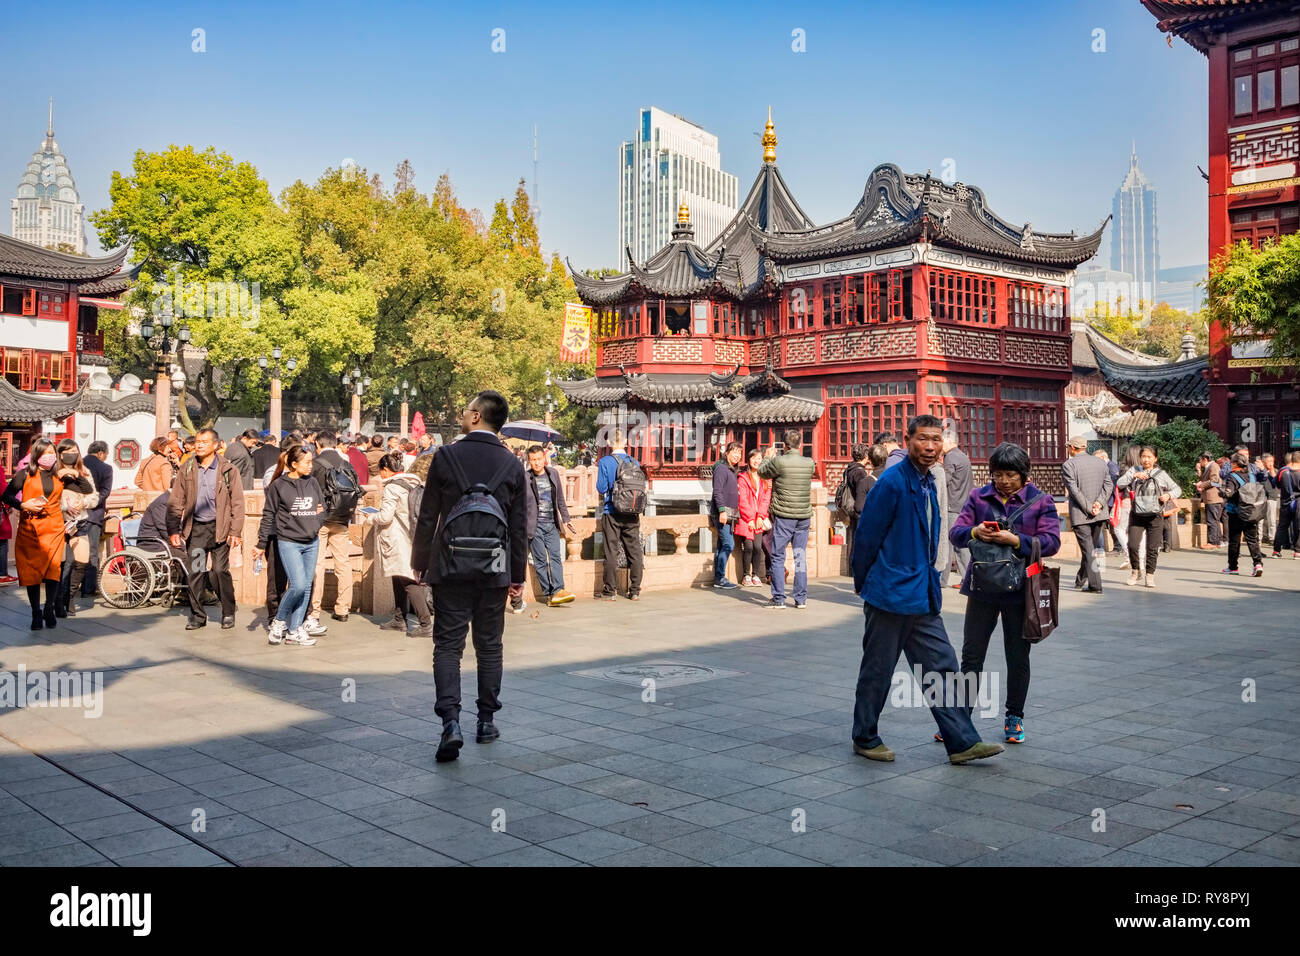 29. November 2018: Shanghai, China - Szene in der Altstadt, Einkaufsmöglichkeiten, eine große Sehenswürdigkeit. Stockfoto